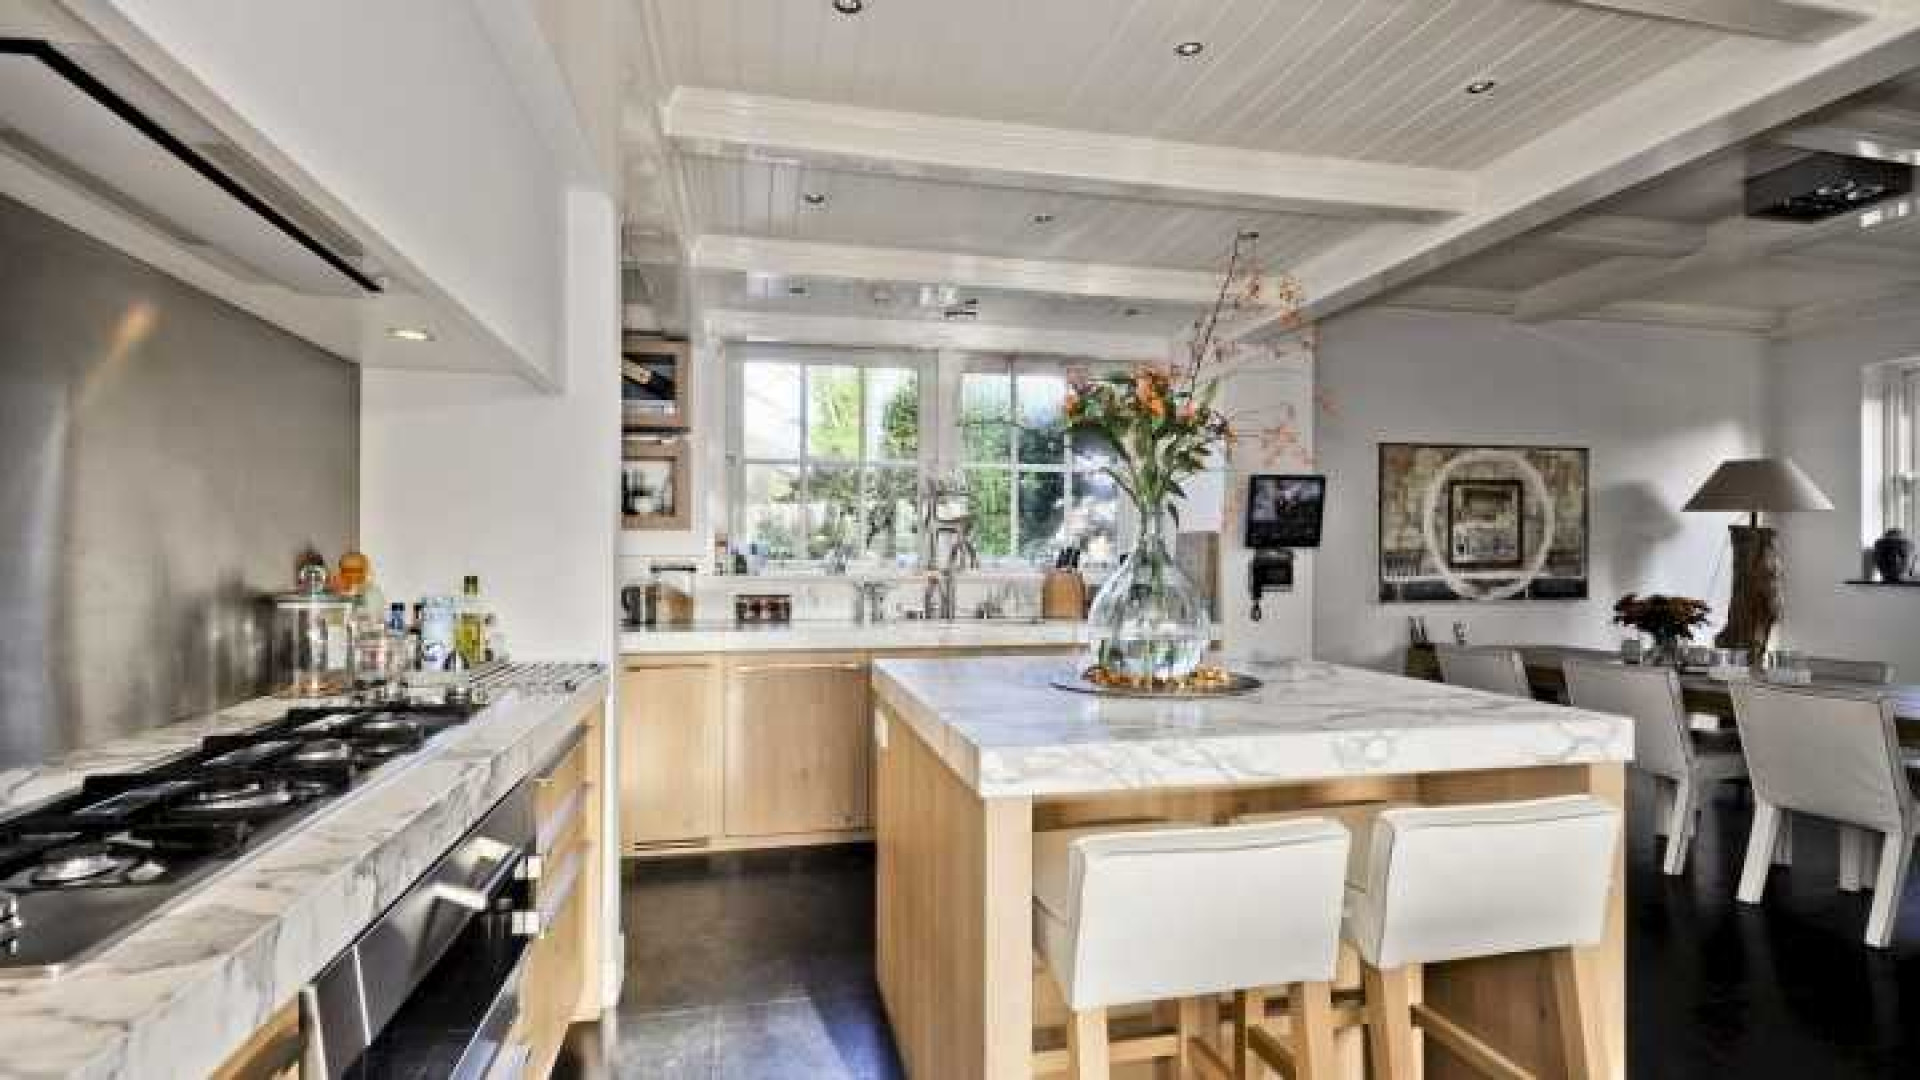 Henny Huisman verkoopt zijn villa zwaar onder de vraagprijs. Zie foto's 10